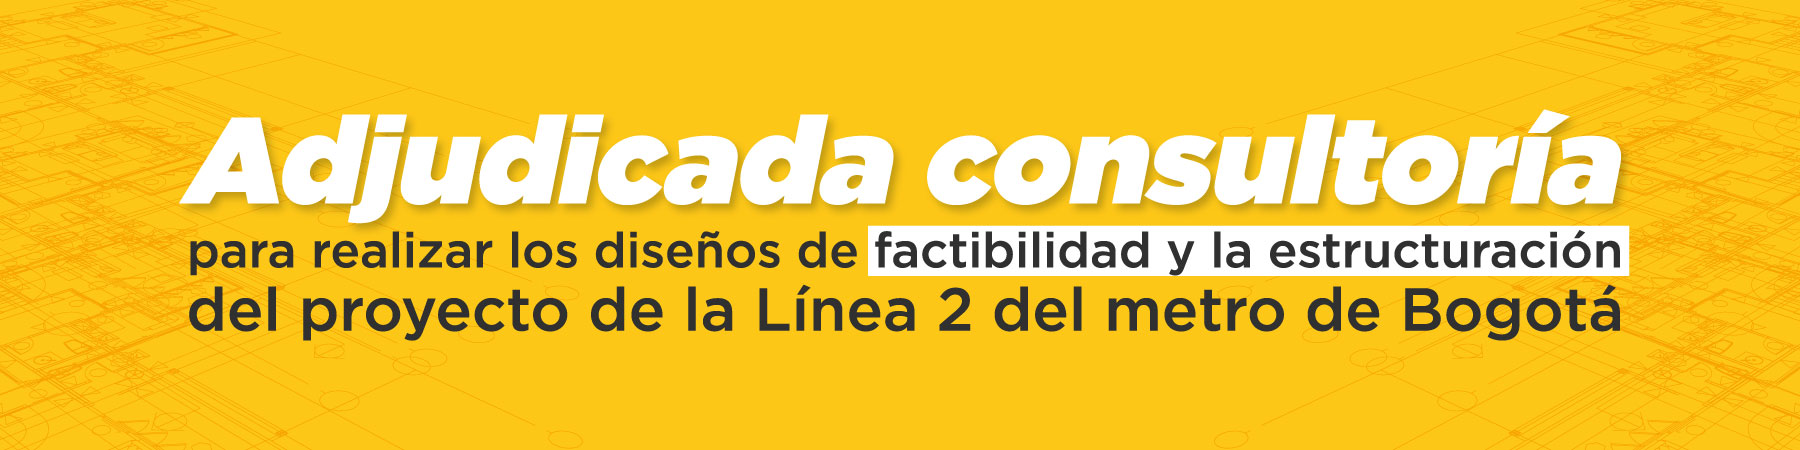 Adjudicada consultoría para realizar los diseños de factibilidad y la estructuración del proyecto de la Línea 2 del metro de Bogotá